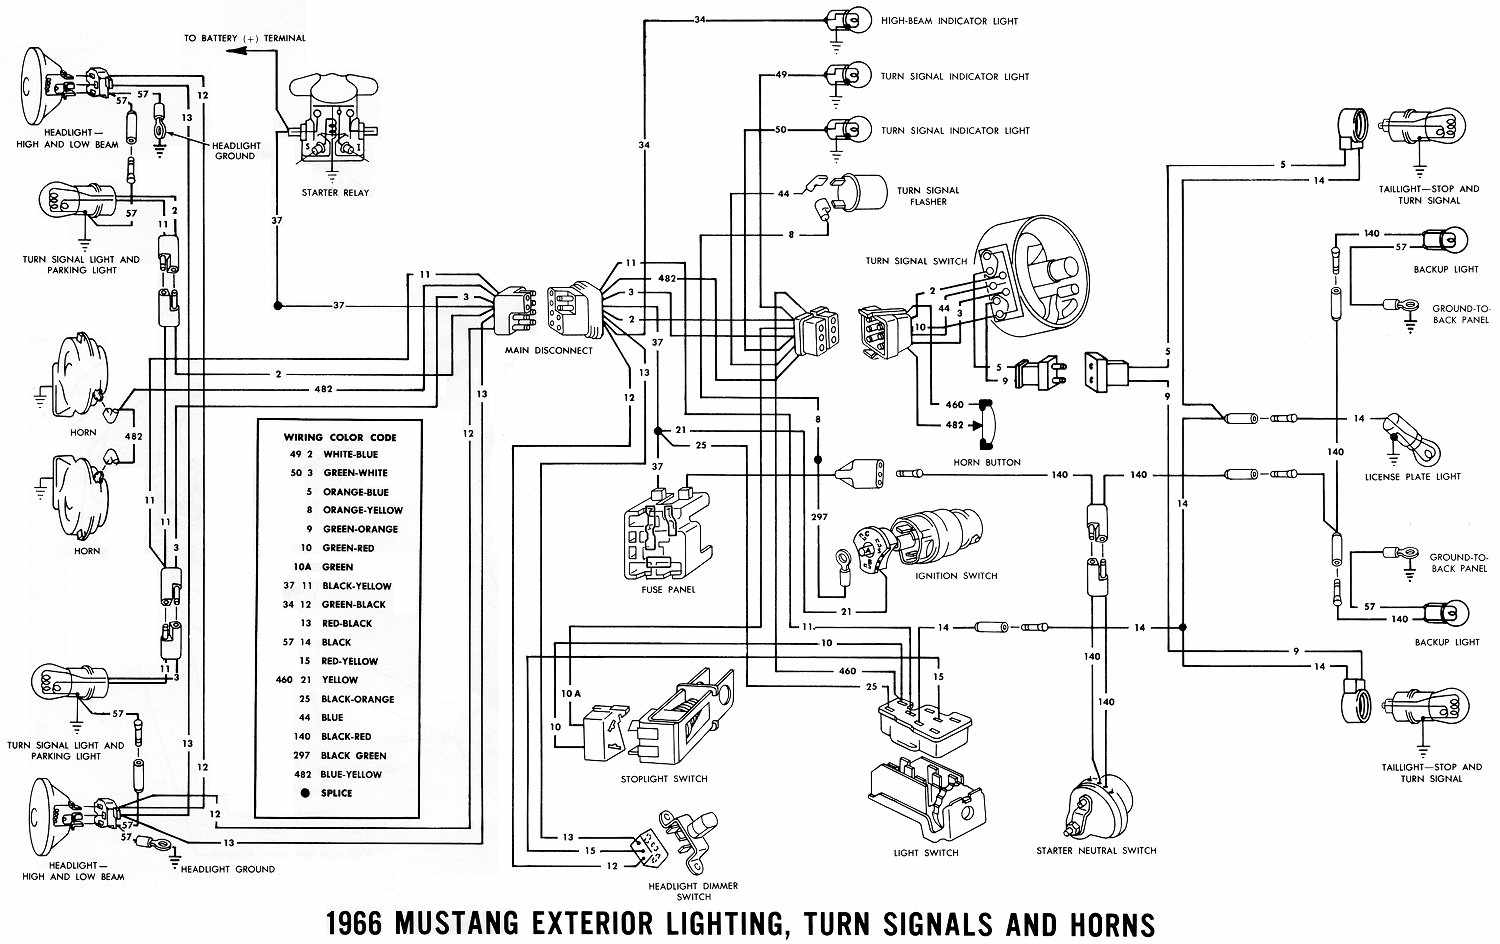 1950 Ford turn signal wiring diagram #2